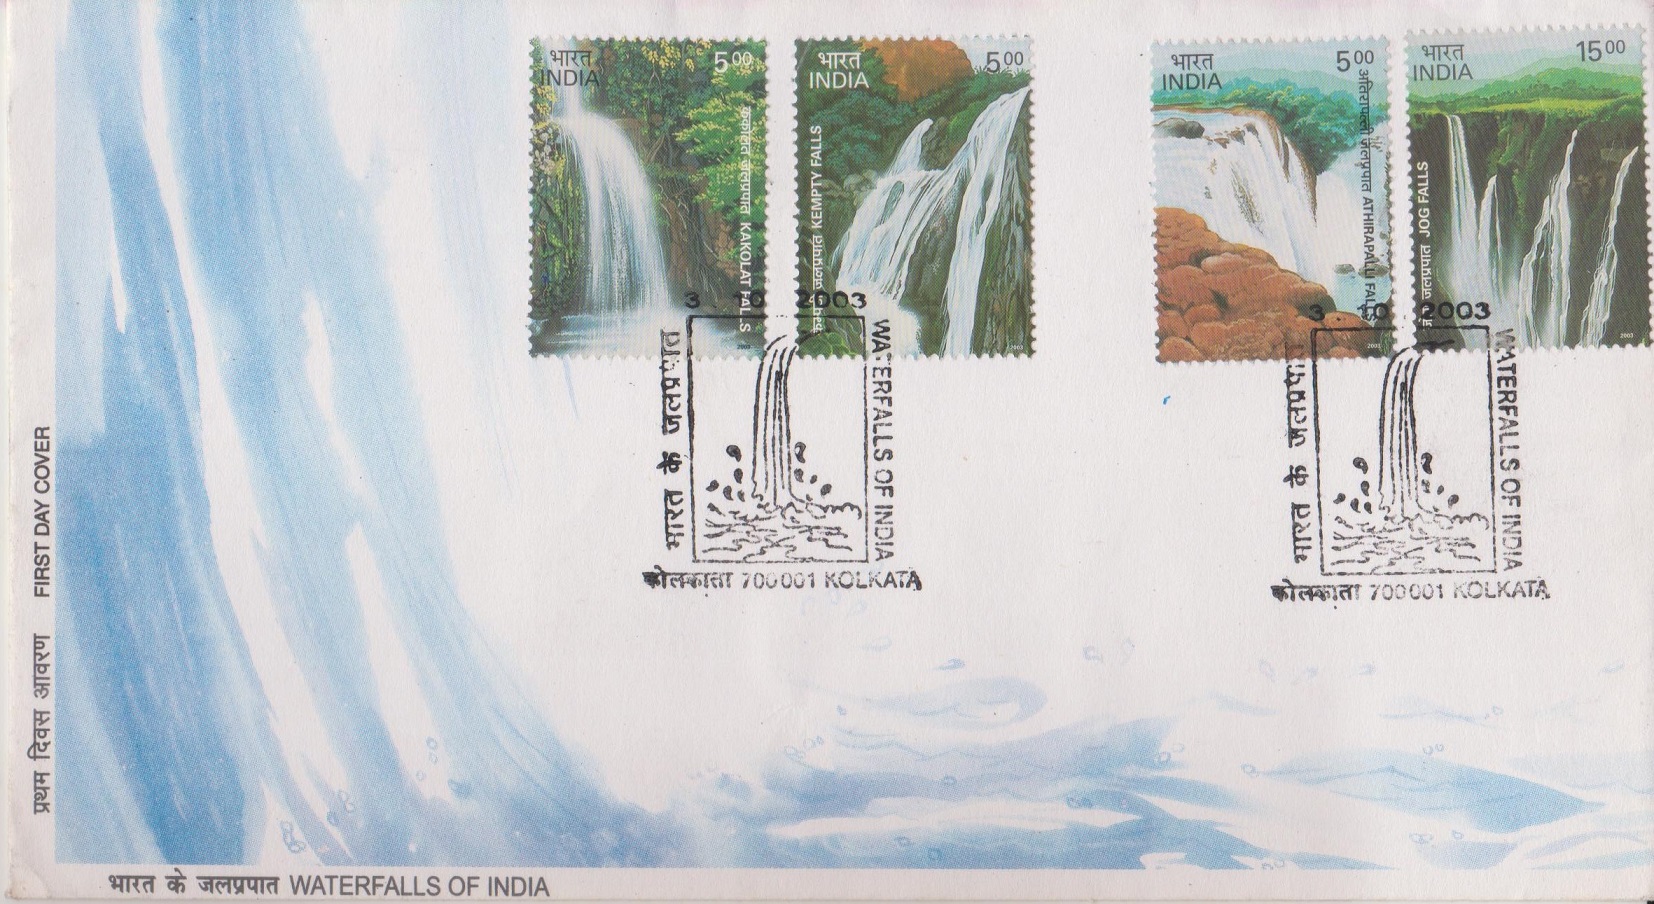 Athirappilly (Niagara of India), Gersoppa, Kempty & Kakolat (Land of Rishi Muni) falls